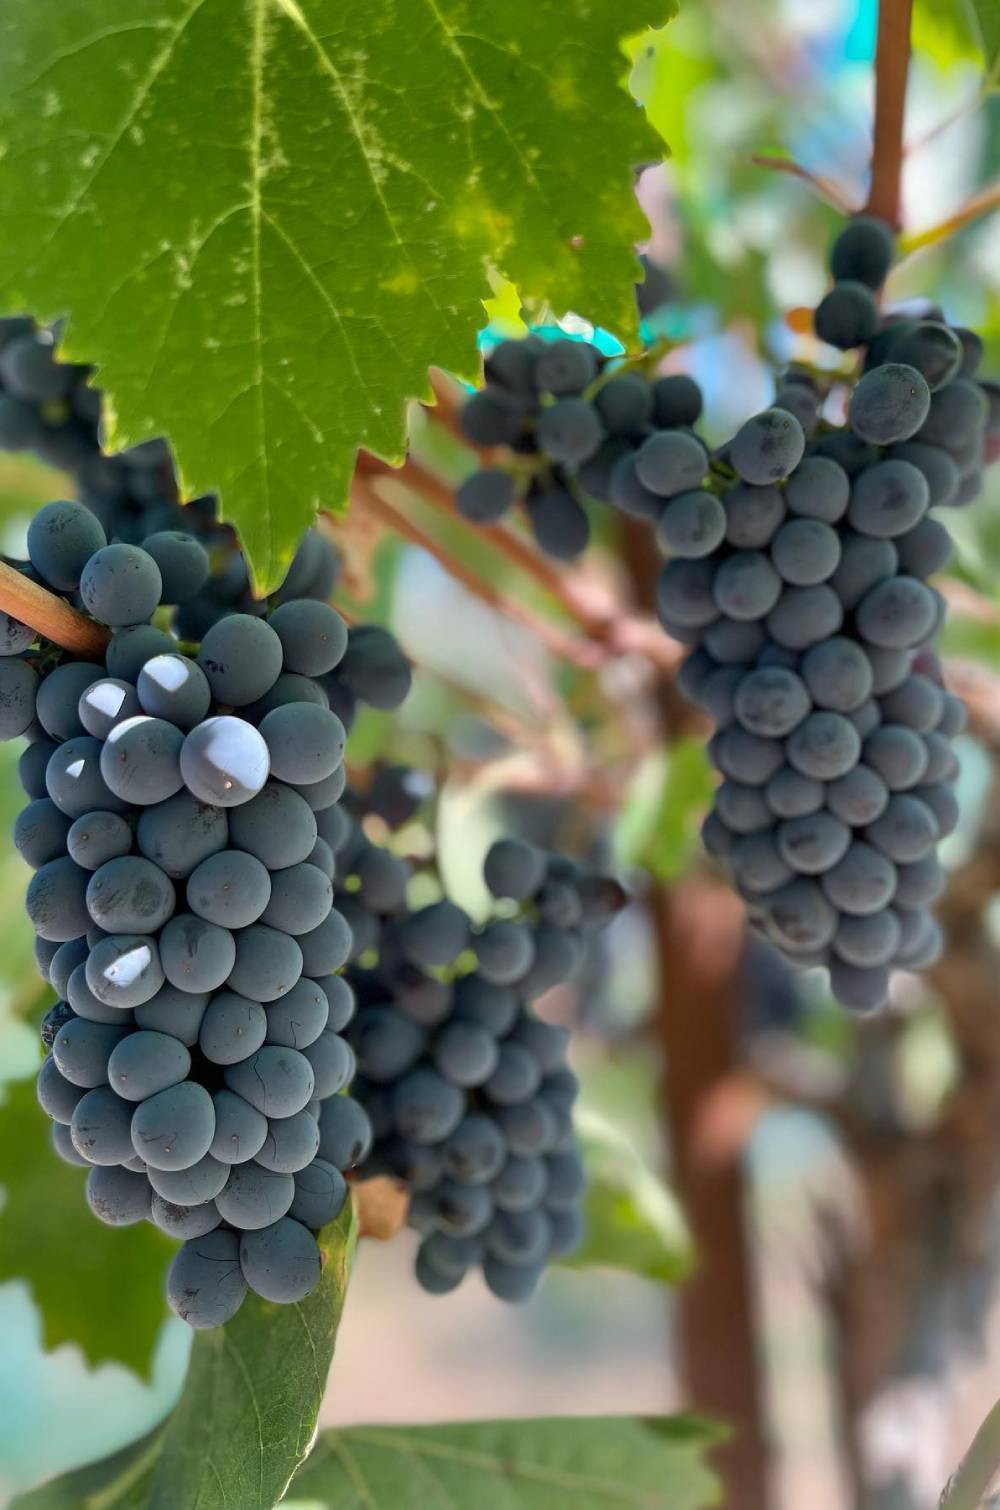 Glorious Grapes at the Vineyard